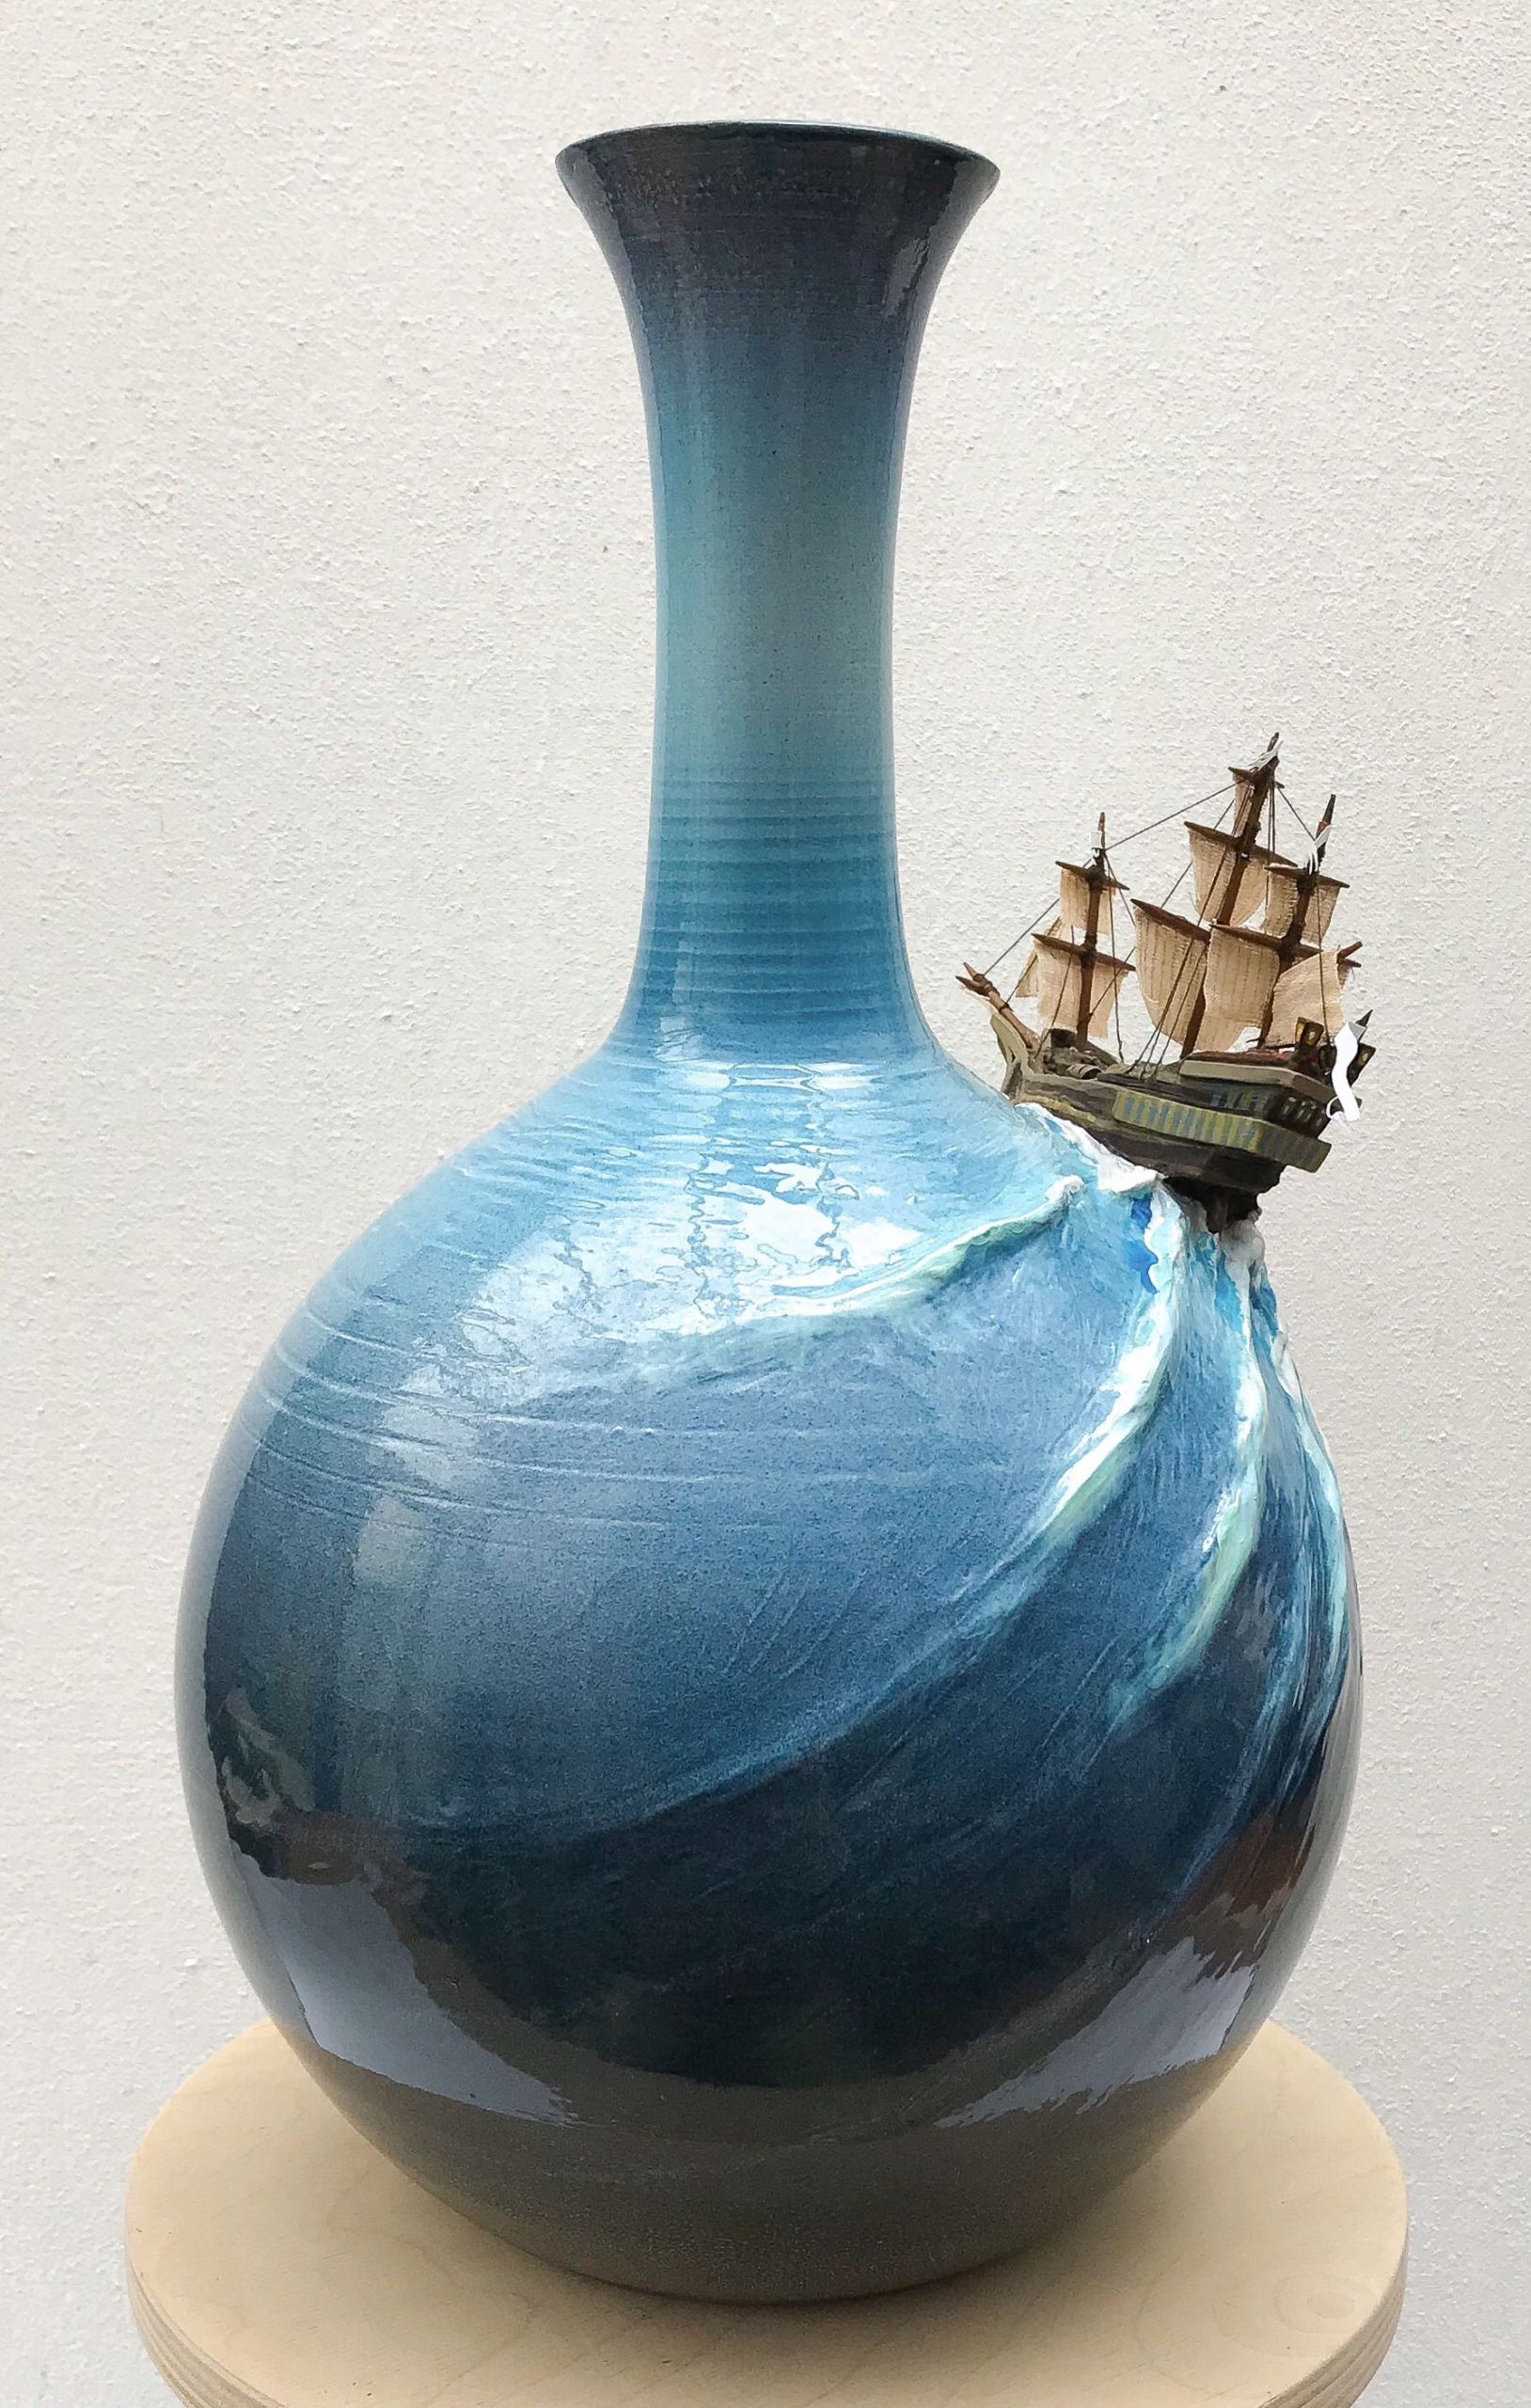 Gartendeko Terracotta Schön Pin by Arts In Clay On Fantasy Ceramic Art In 2019